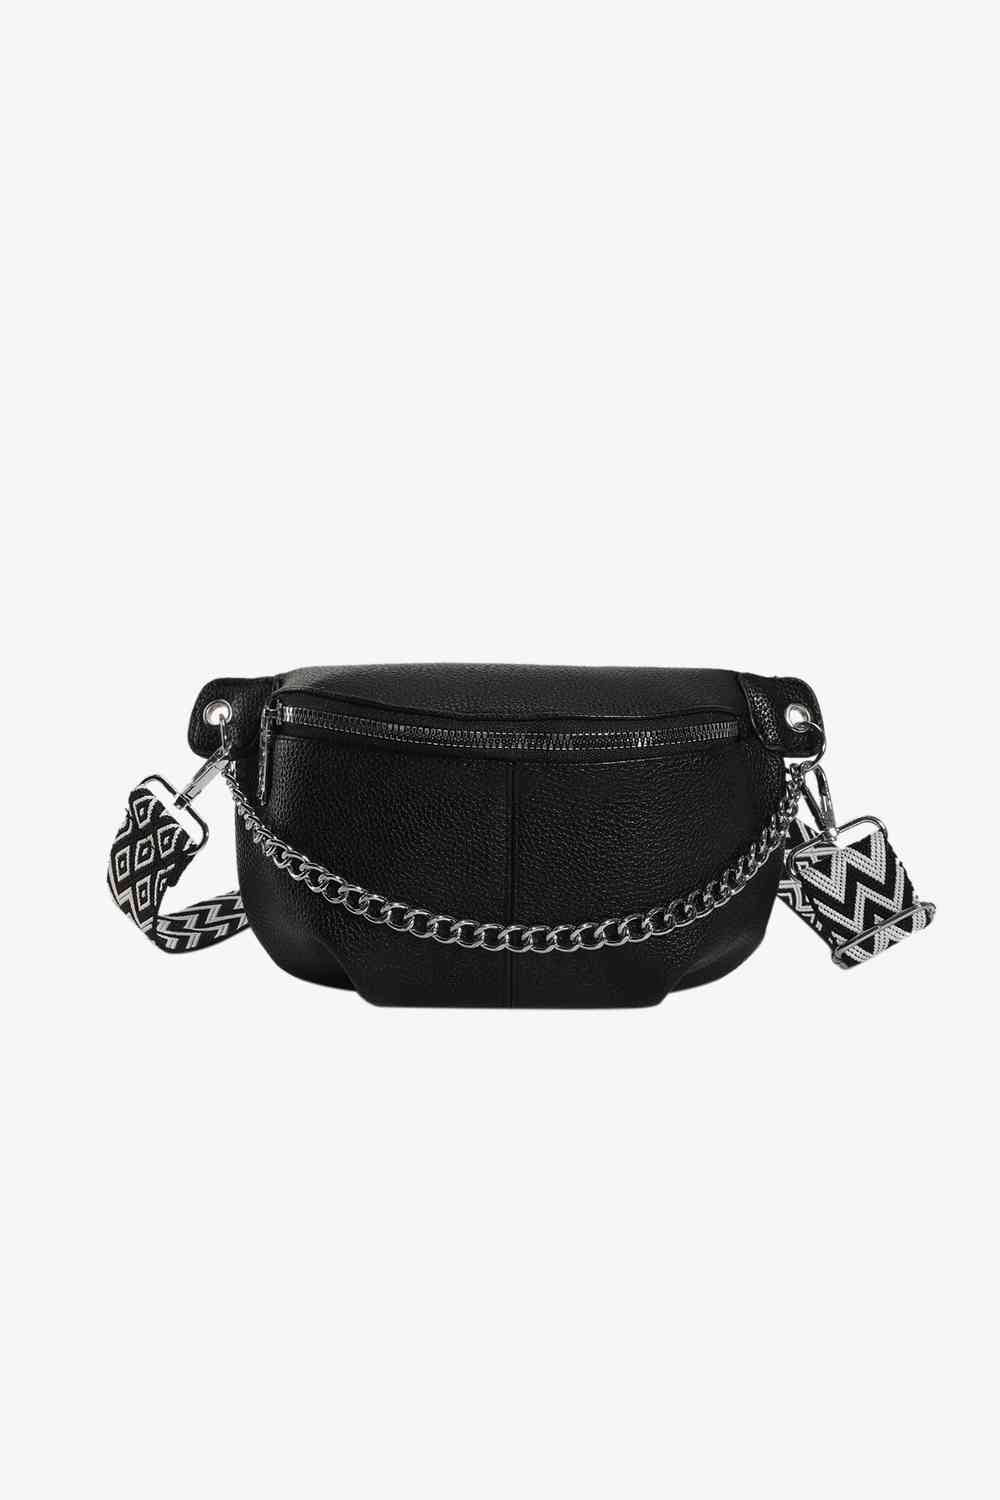 TEEK - Chain Zipper PU Leather Sling Bag BAG TEEK Trend Black  